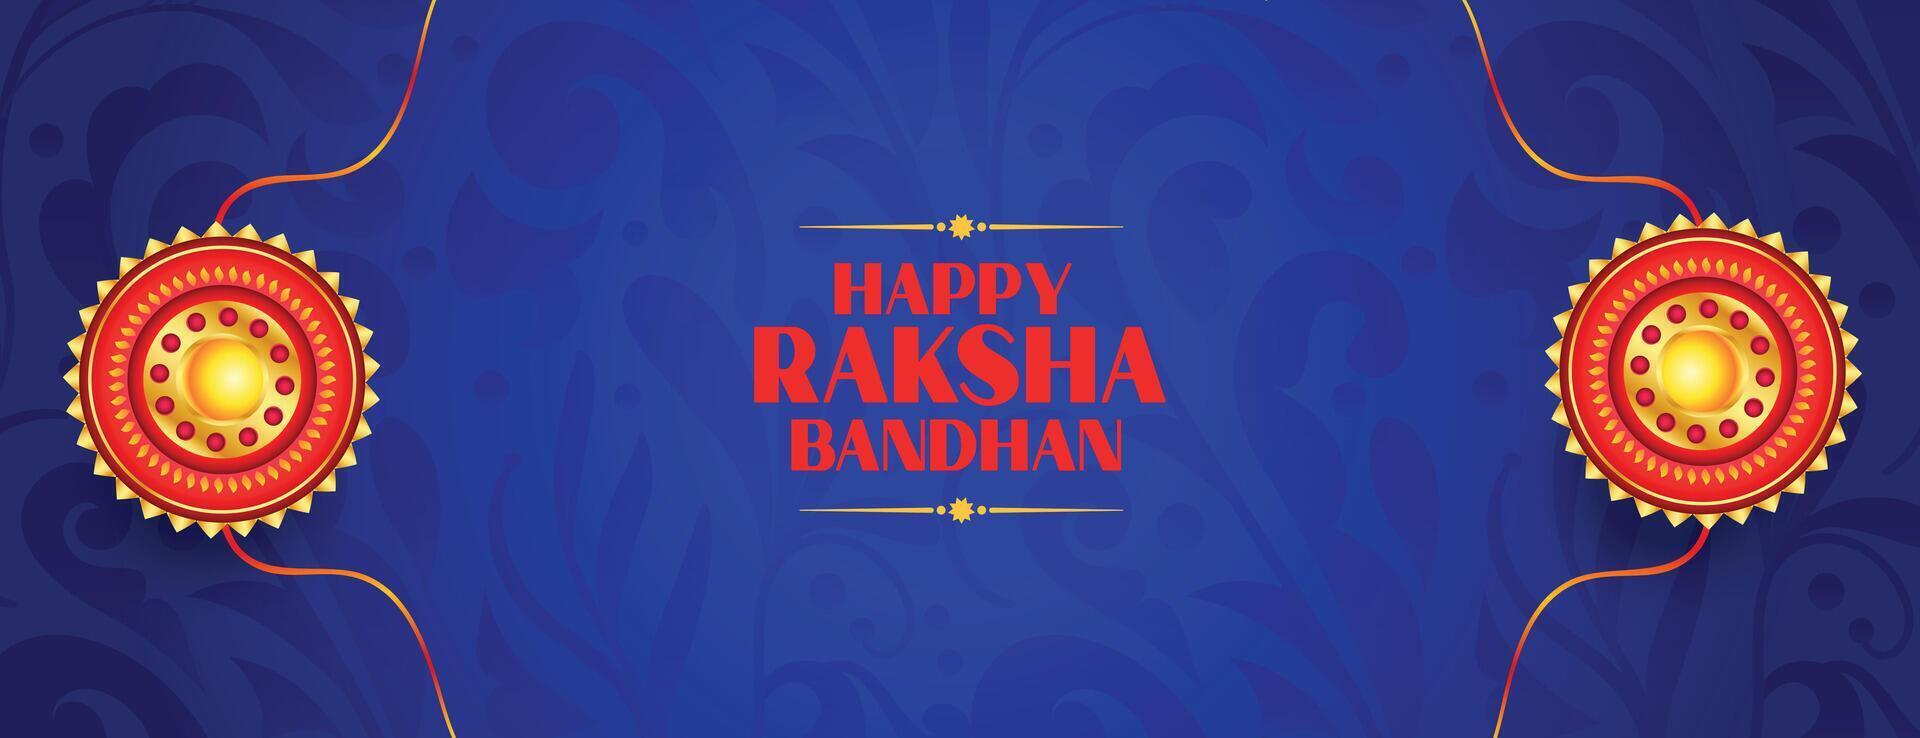 étnico estilo raksha bandhan celebração desejos cartão modelo vetor